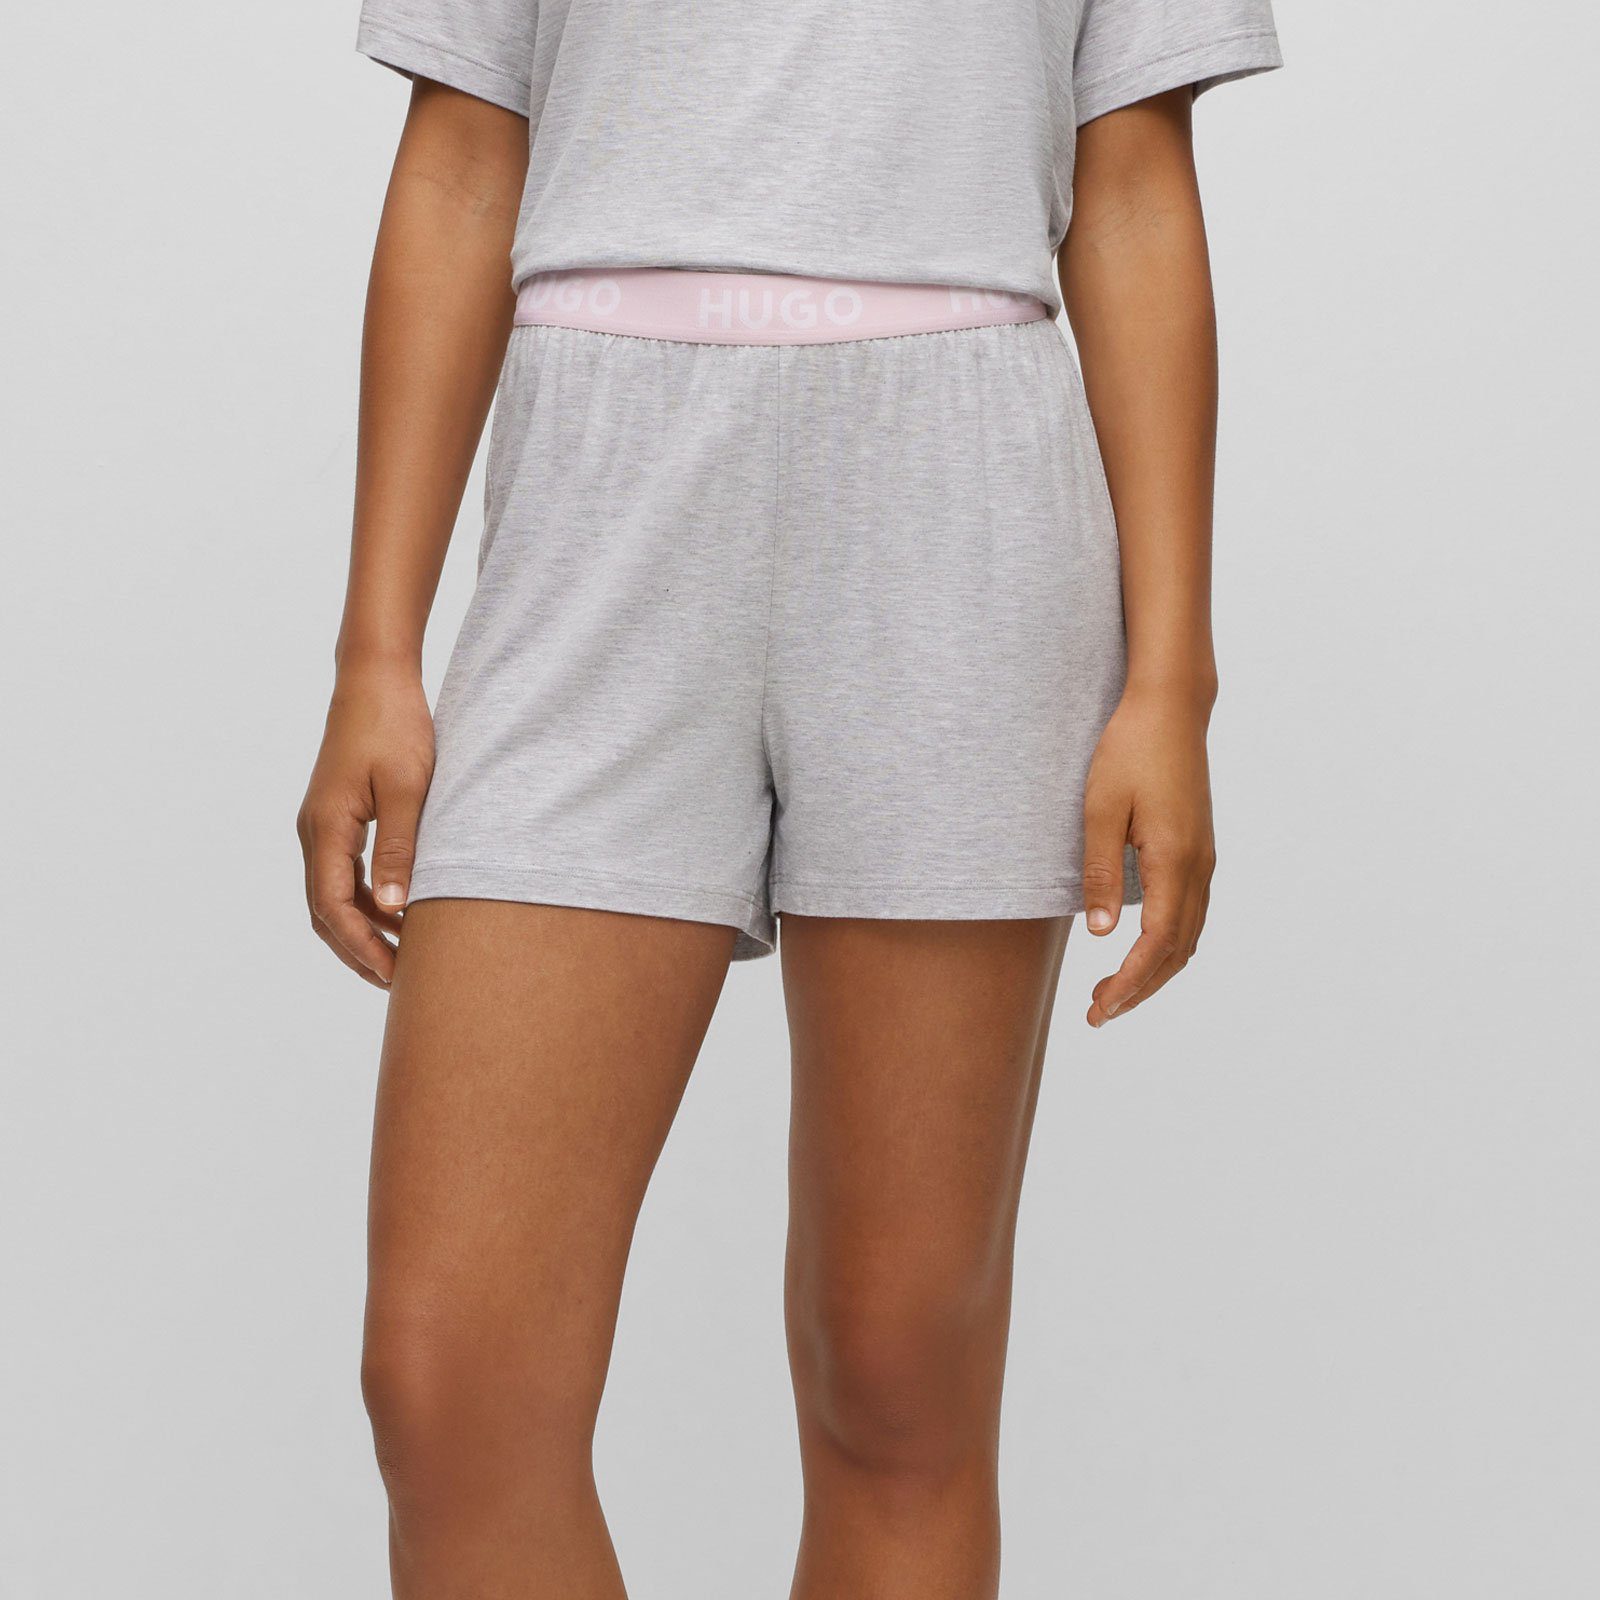 Shorts Unite Marken-Logos mit HUGO Pyjamashorts mit sichtbarem Bund